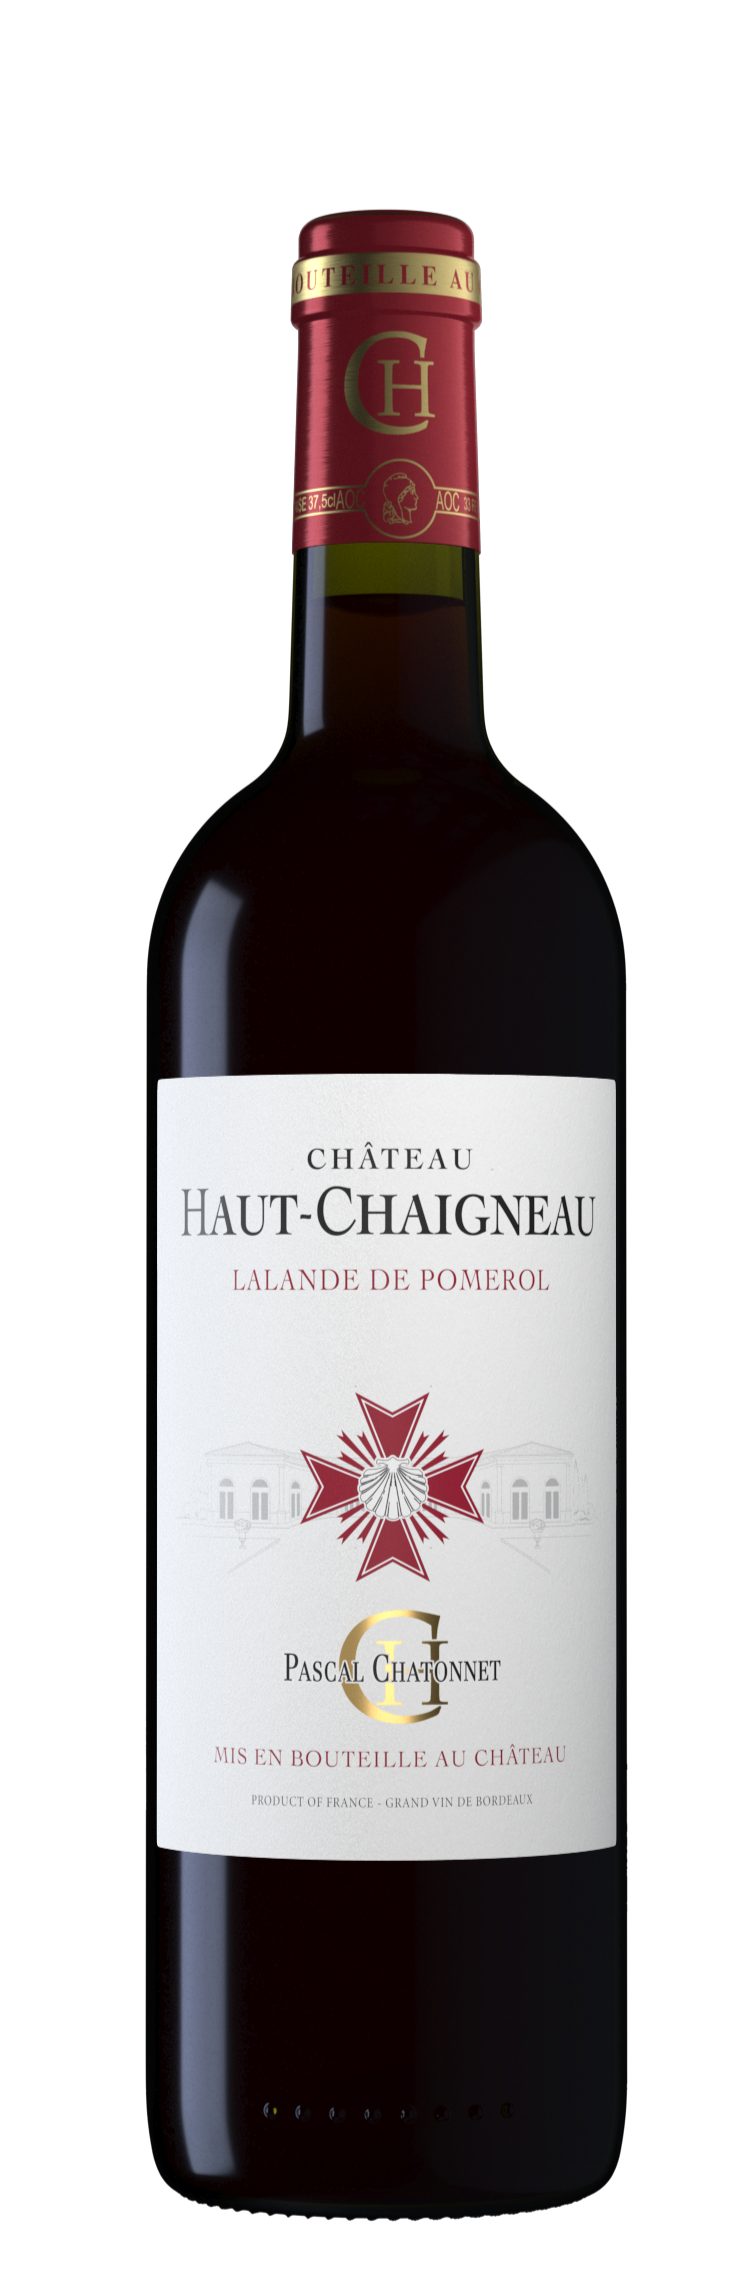 Scev Vignobles Chatonnet Château Haut-Chaigneau, Rouge, 2016, Lalande-de-Pomerol. Bottle image